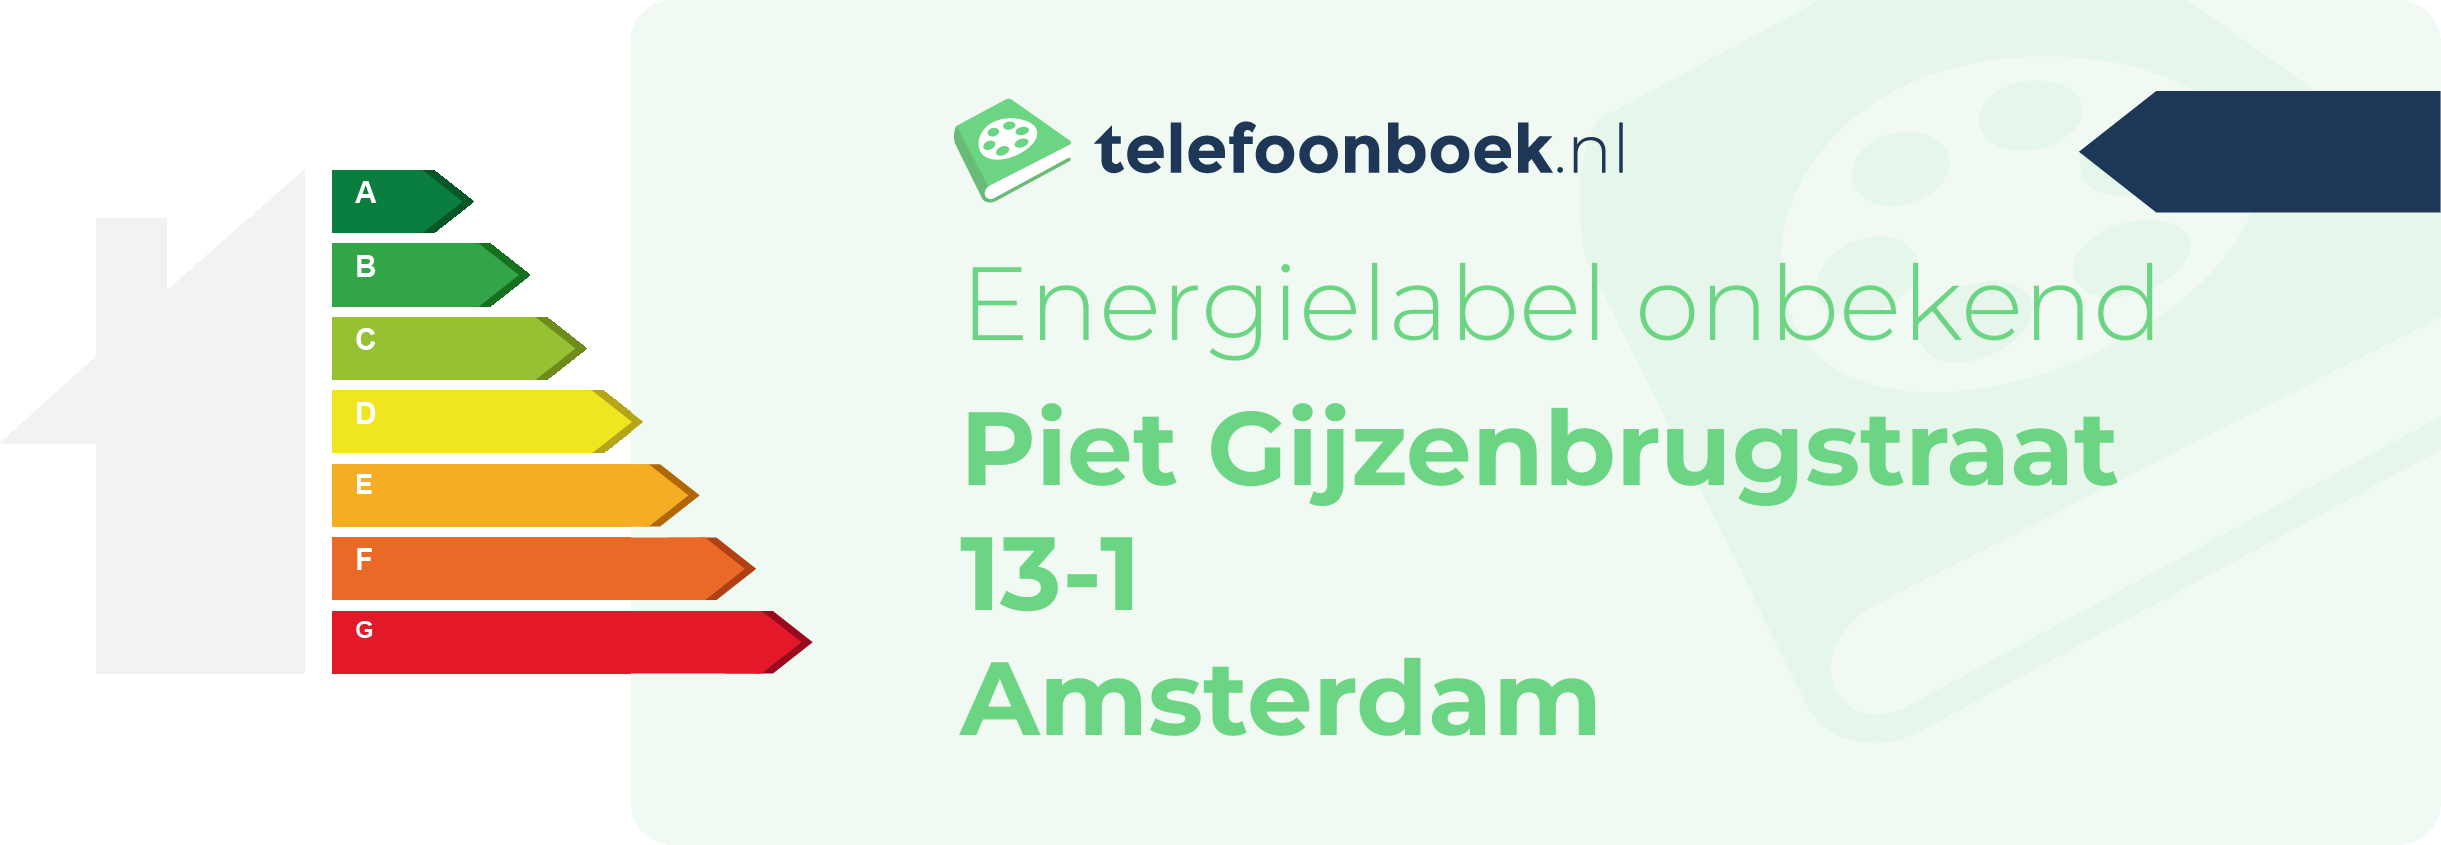 Energielabel Piet Gijzenbrugstraat 13-1 Amsterdam